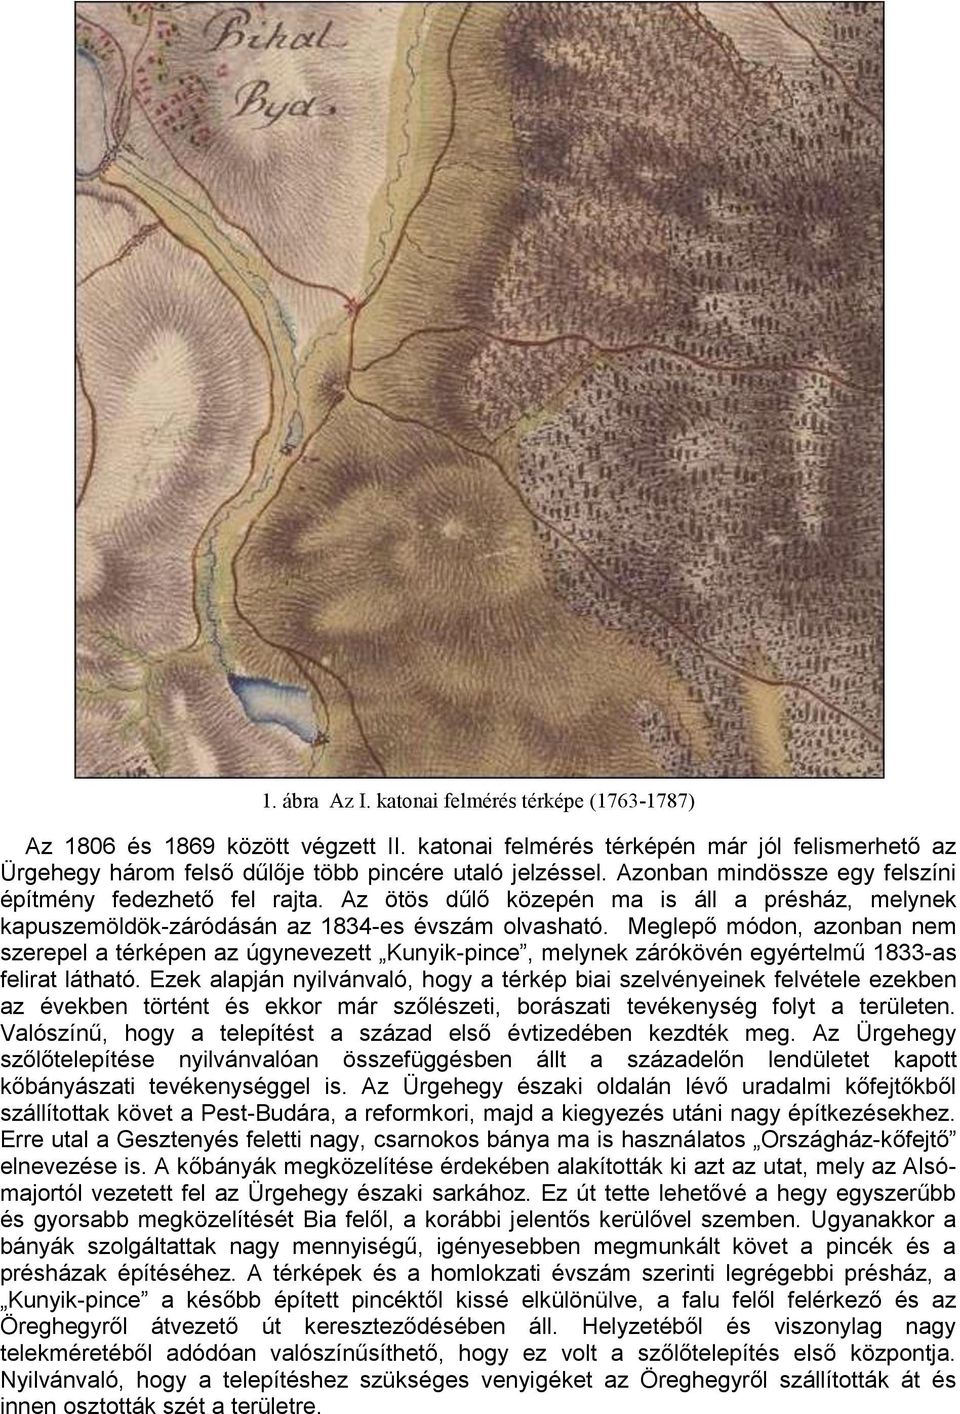 Meglepő módon, azonban nem szerepel a térképen az úgynevezett Kunyik-pince, melynek zárókövén egyértelmű 1833-as felirat látható.